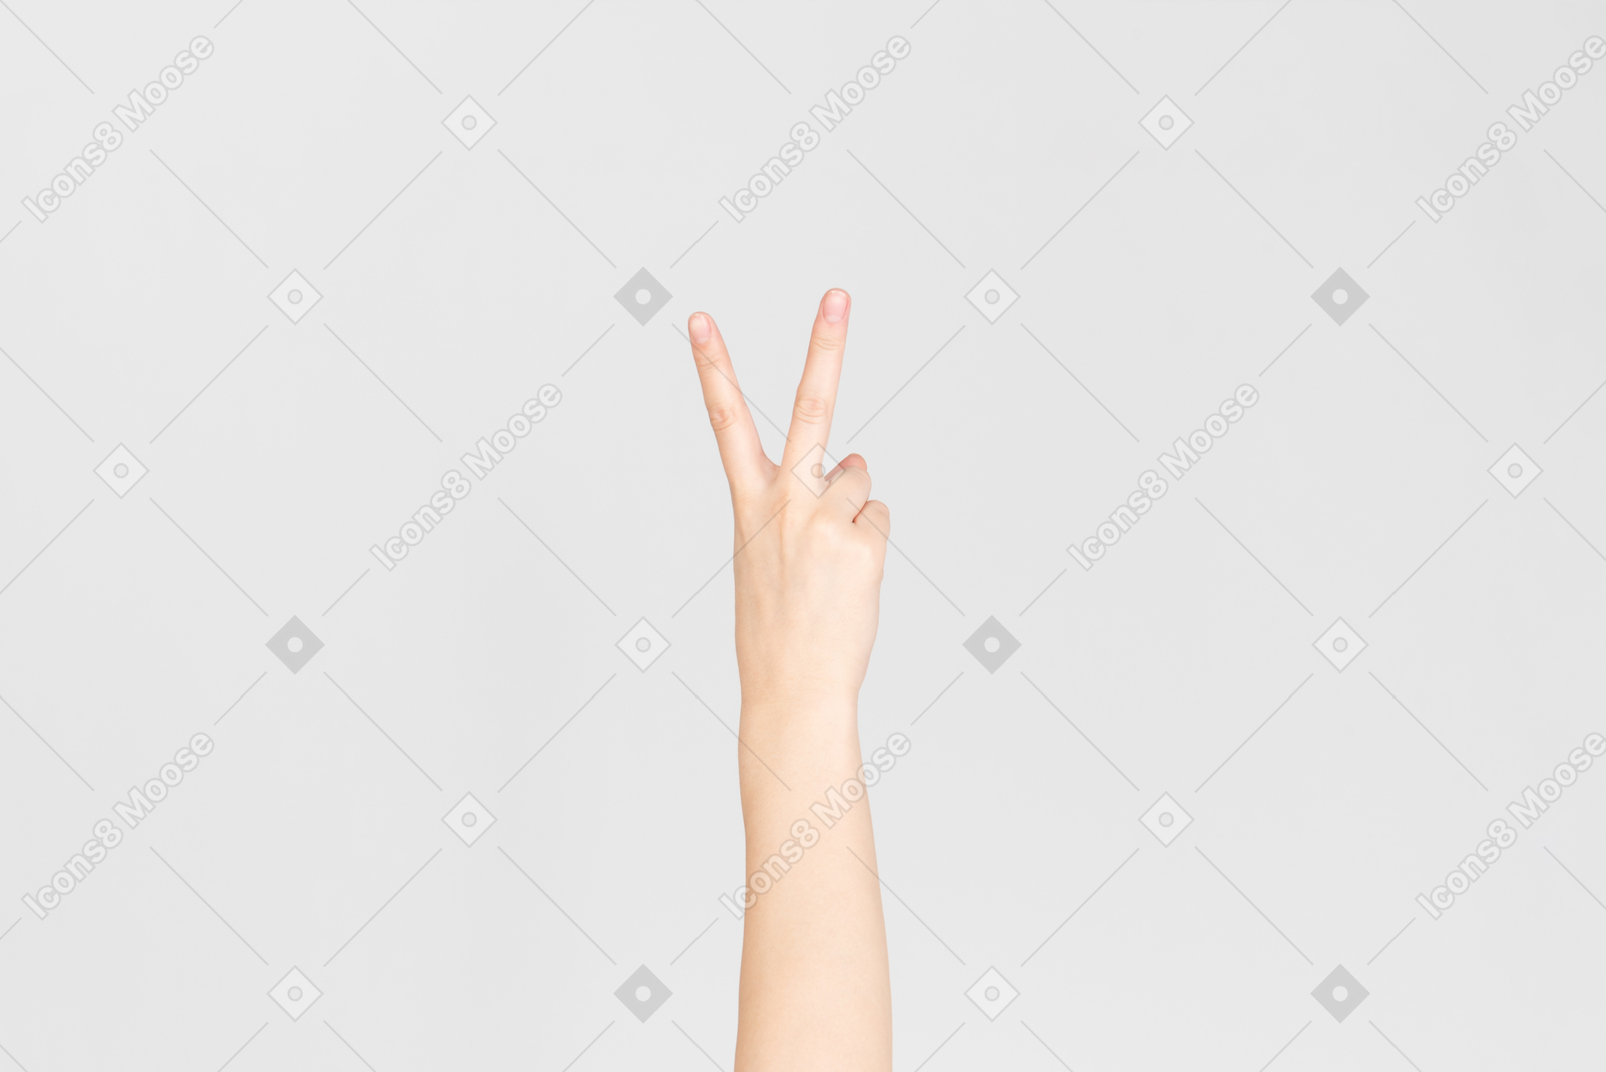 Female hand showing v sign